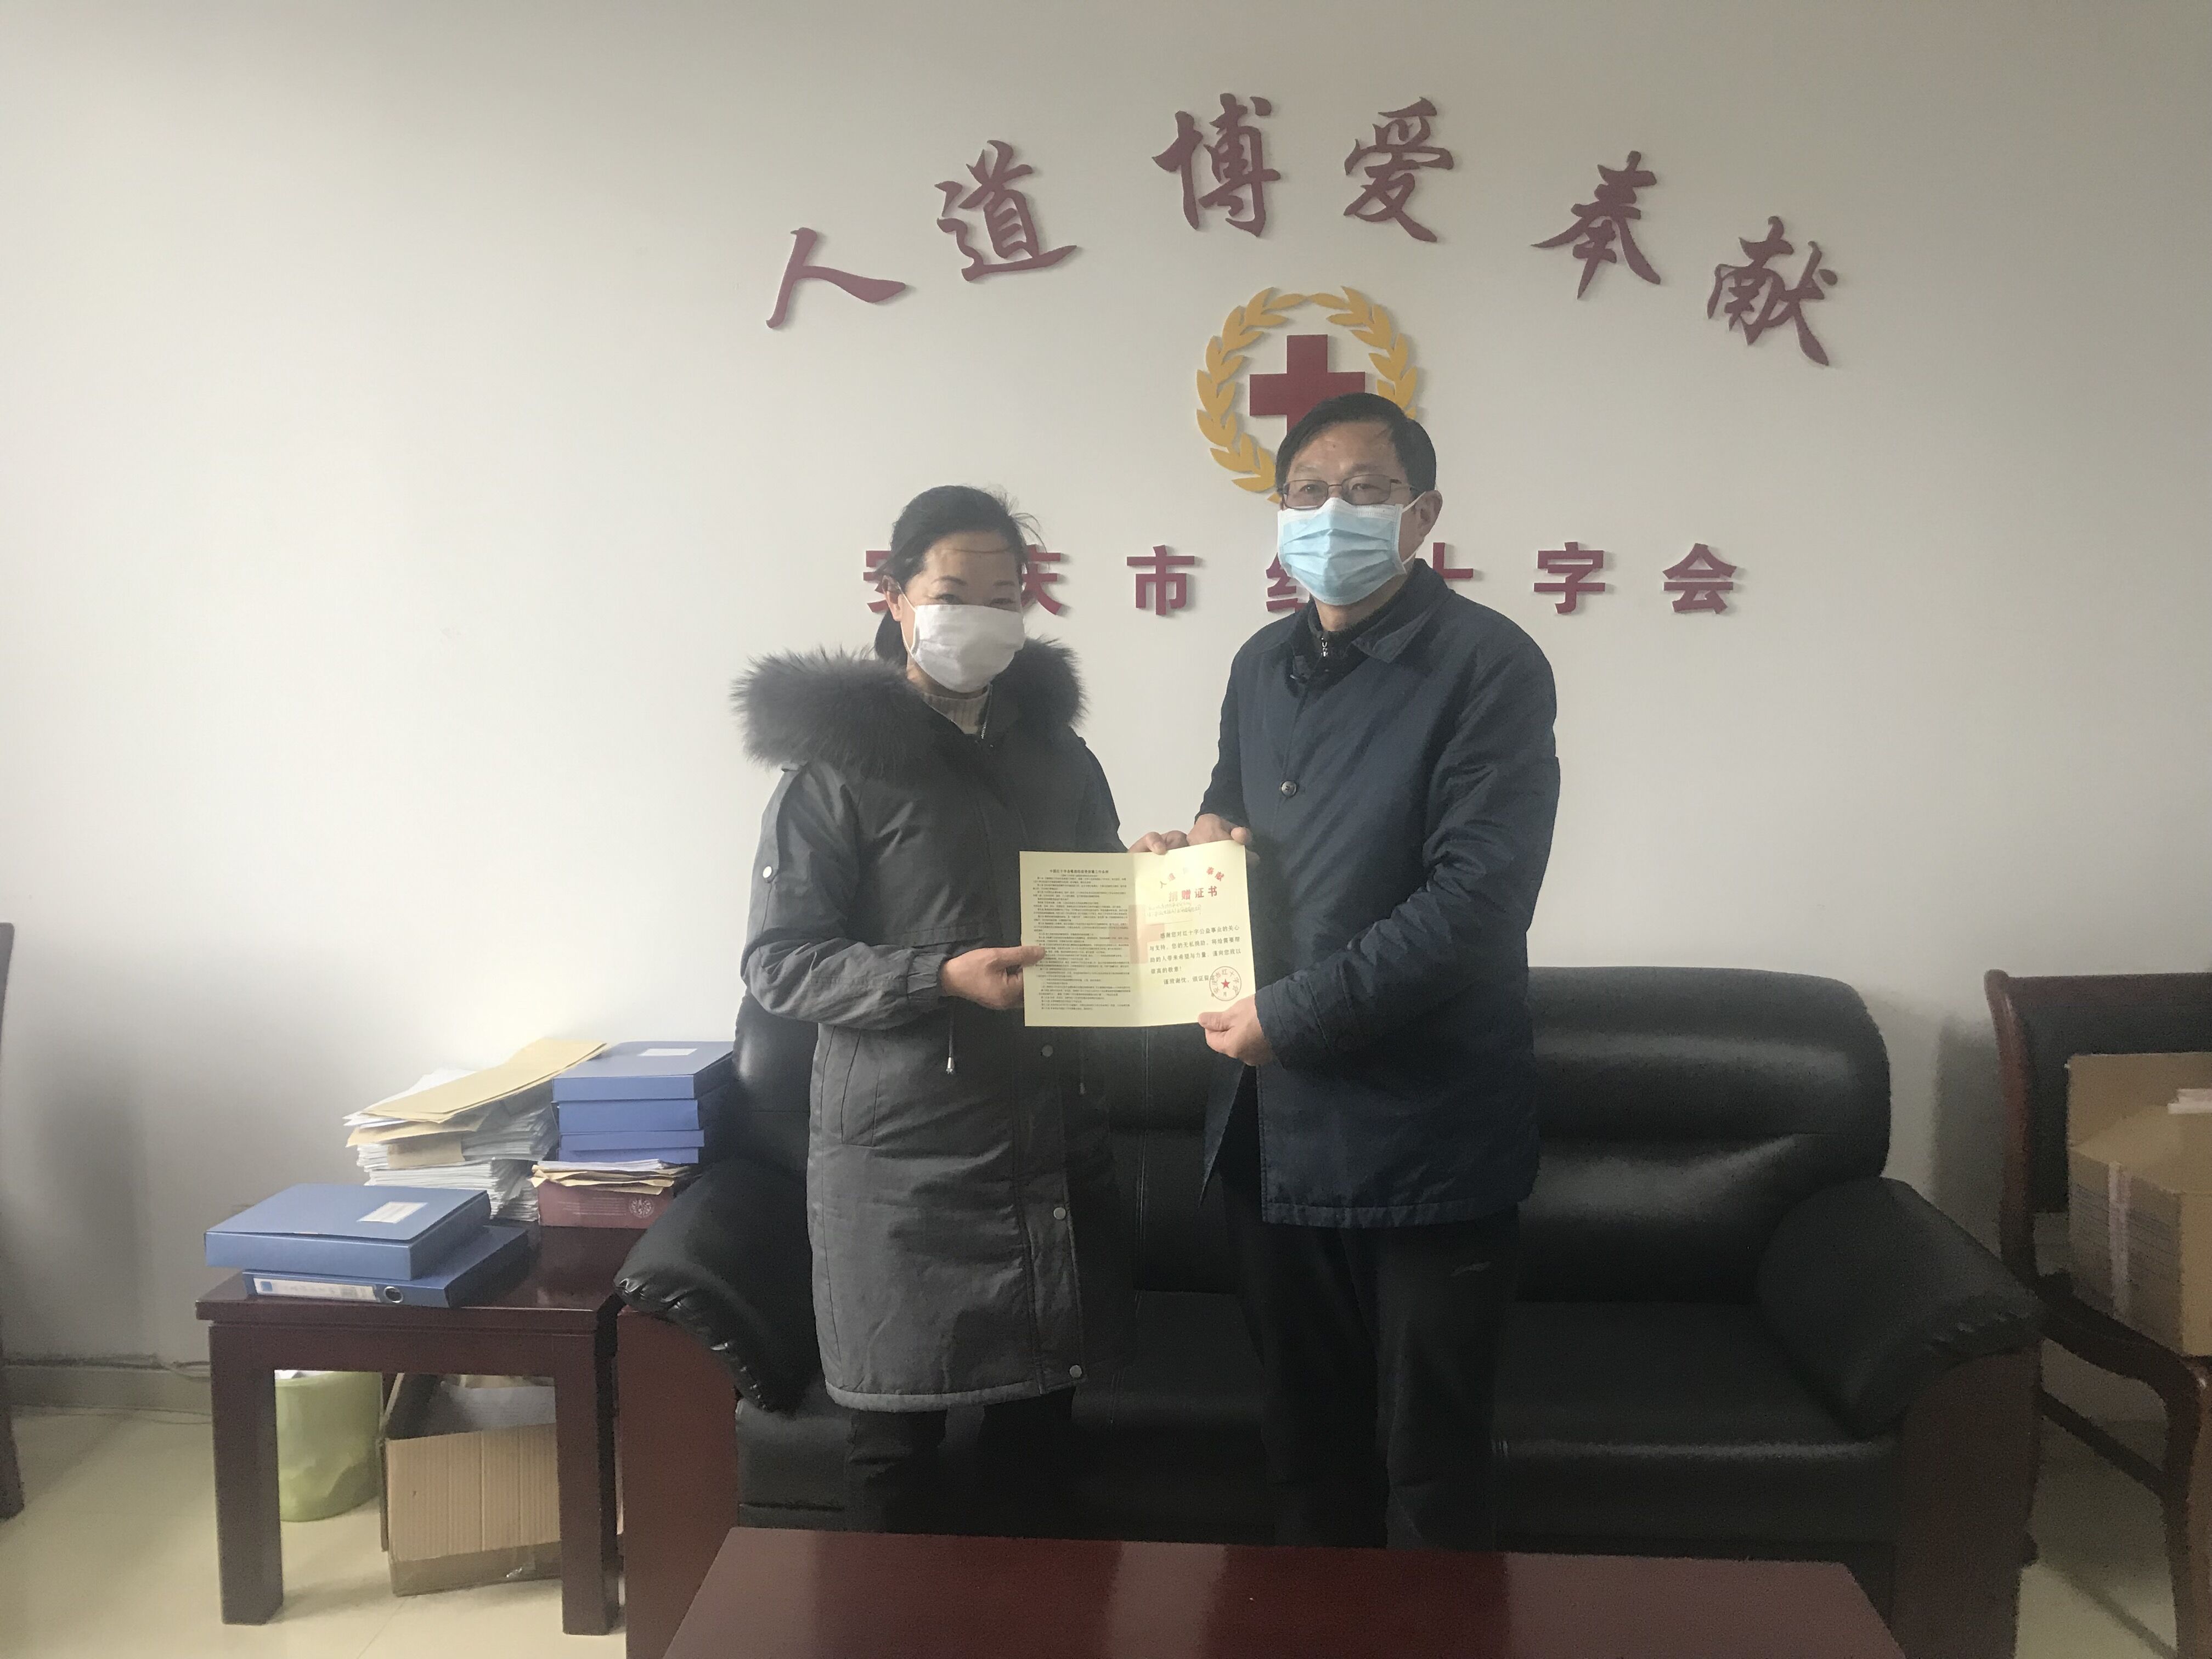 山城集团捐款安庆市红十字会15万元用于疫情防控